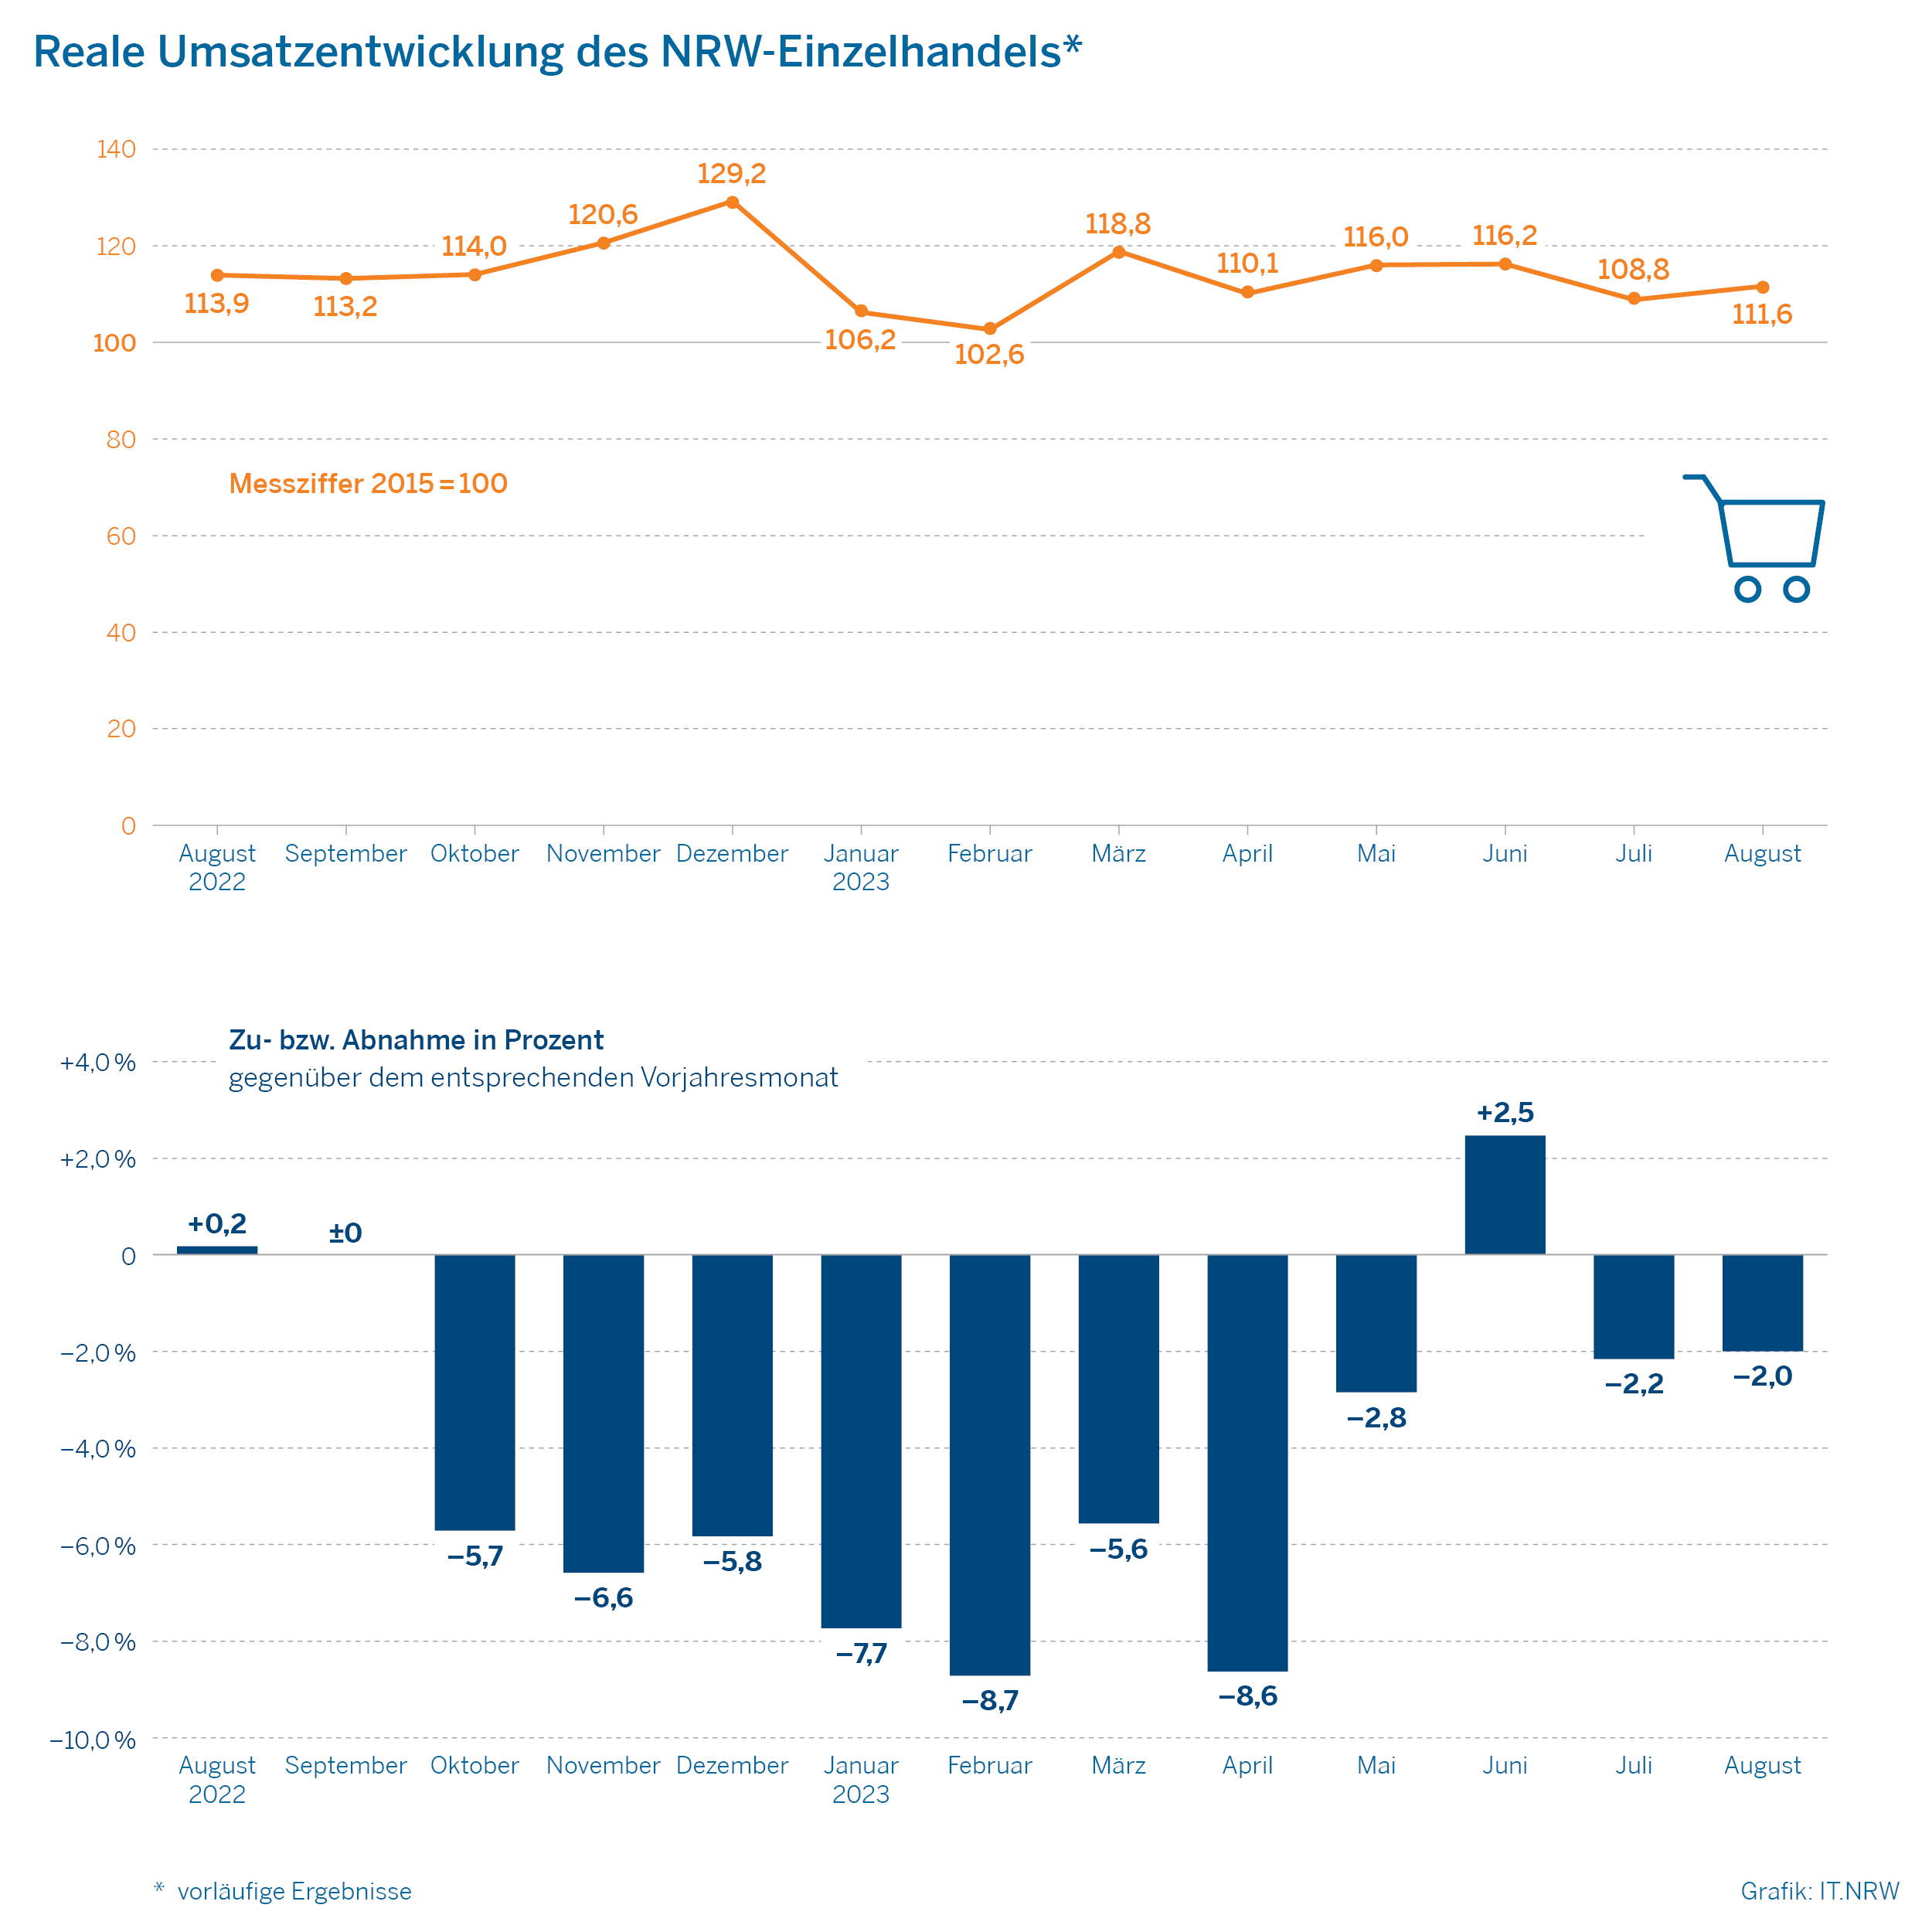 Reale Umsatzentwicklung des NRW-Einzelhandels